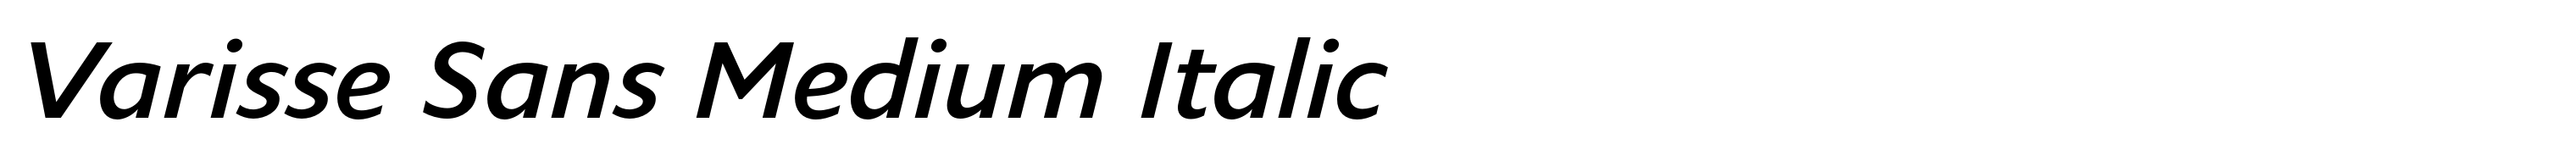 Varisse Sans Medium Italic